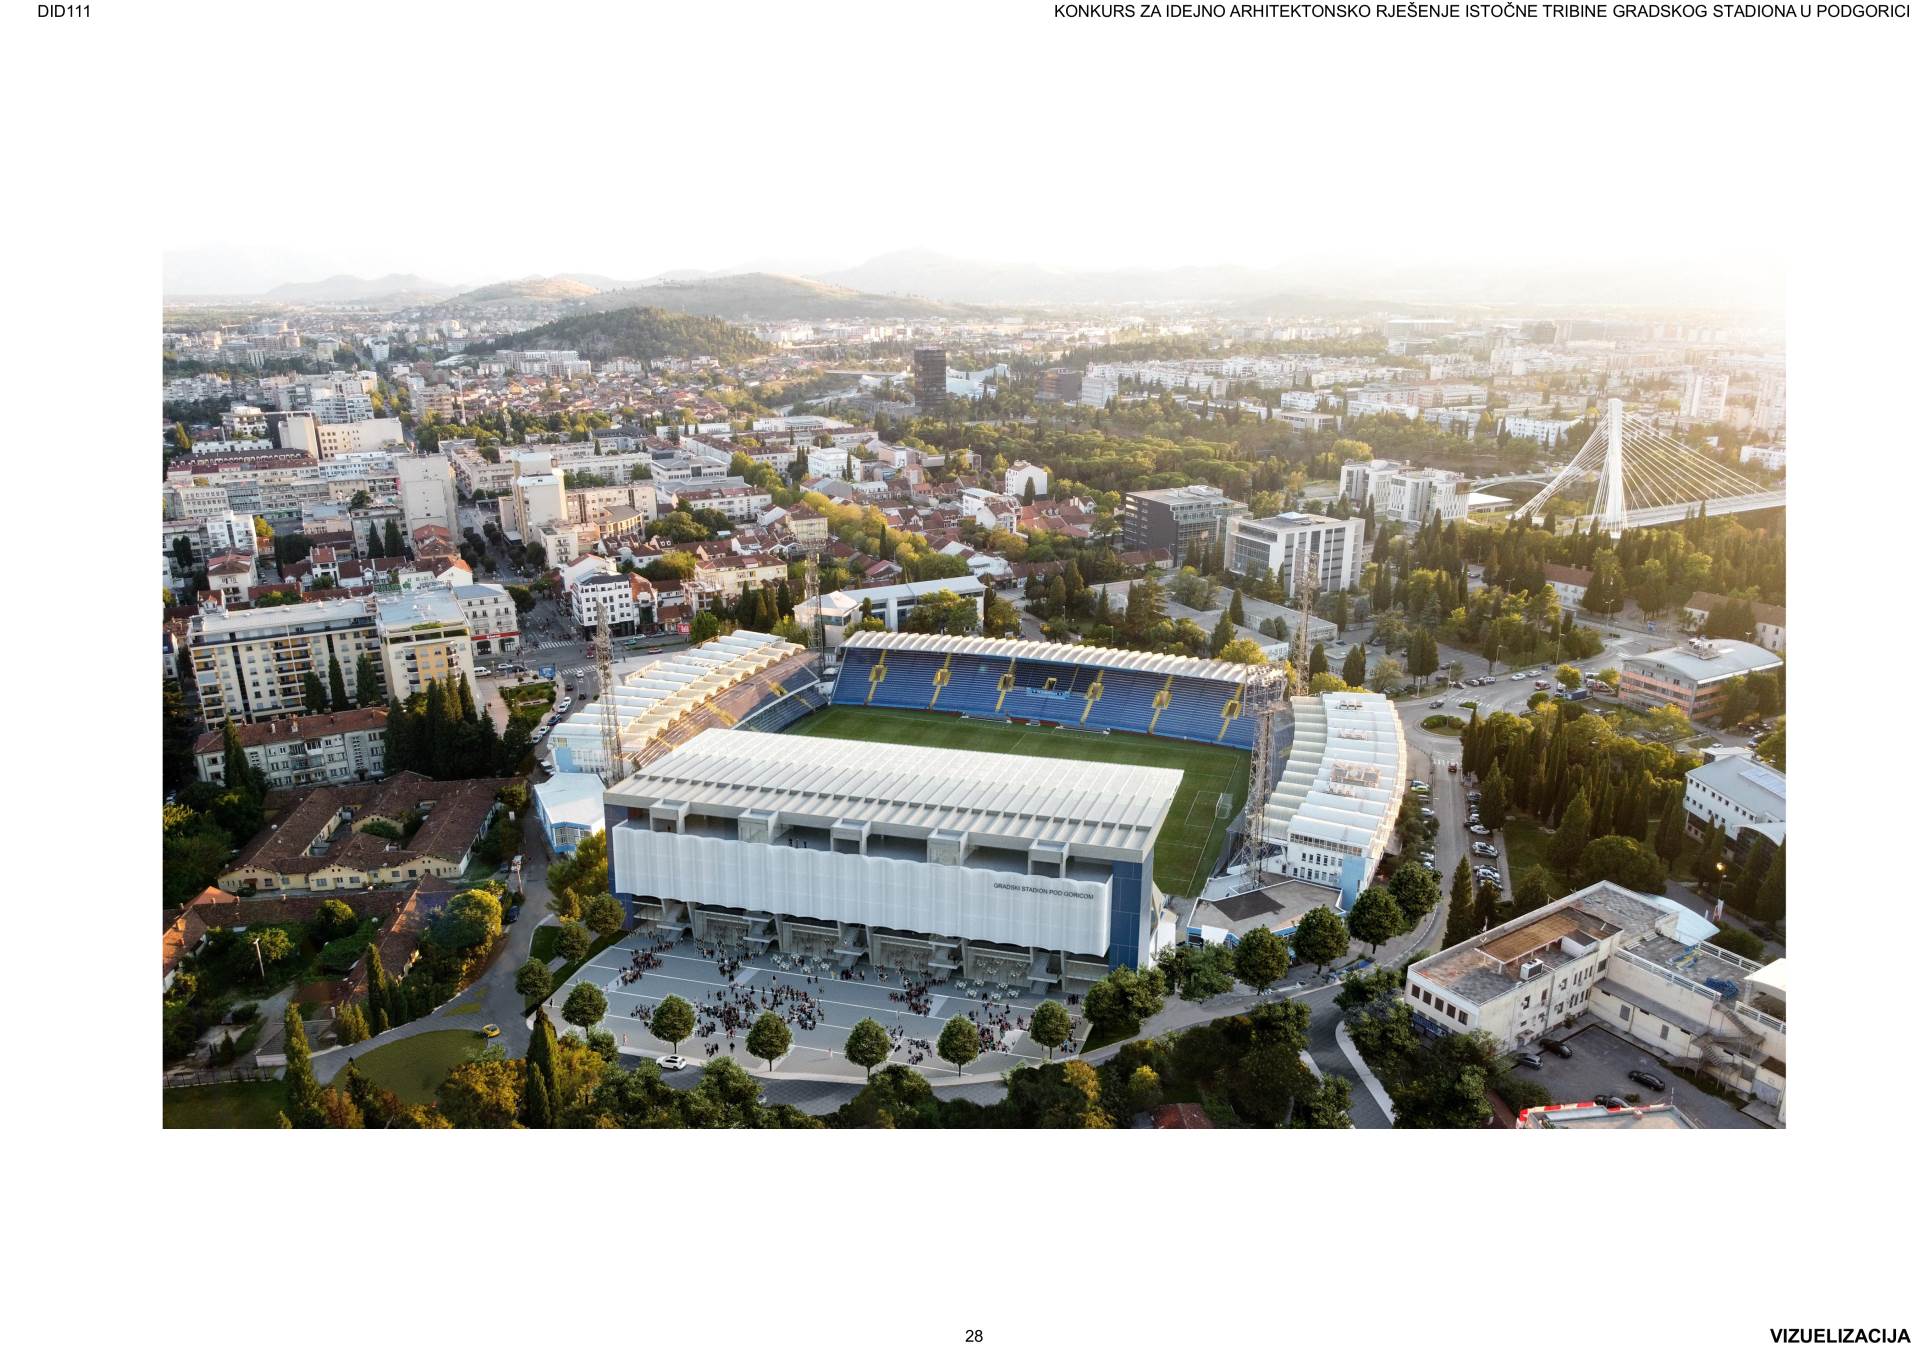  Završen konkurs za idejno rješenje istočne tribine Gradskog stadiona u Podgorici 